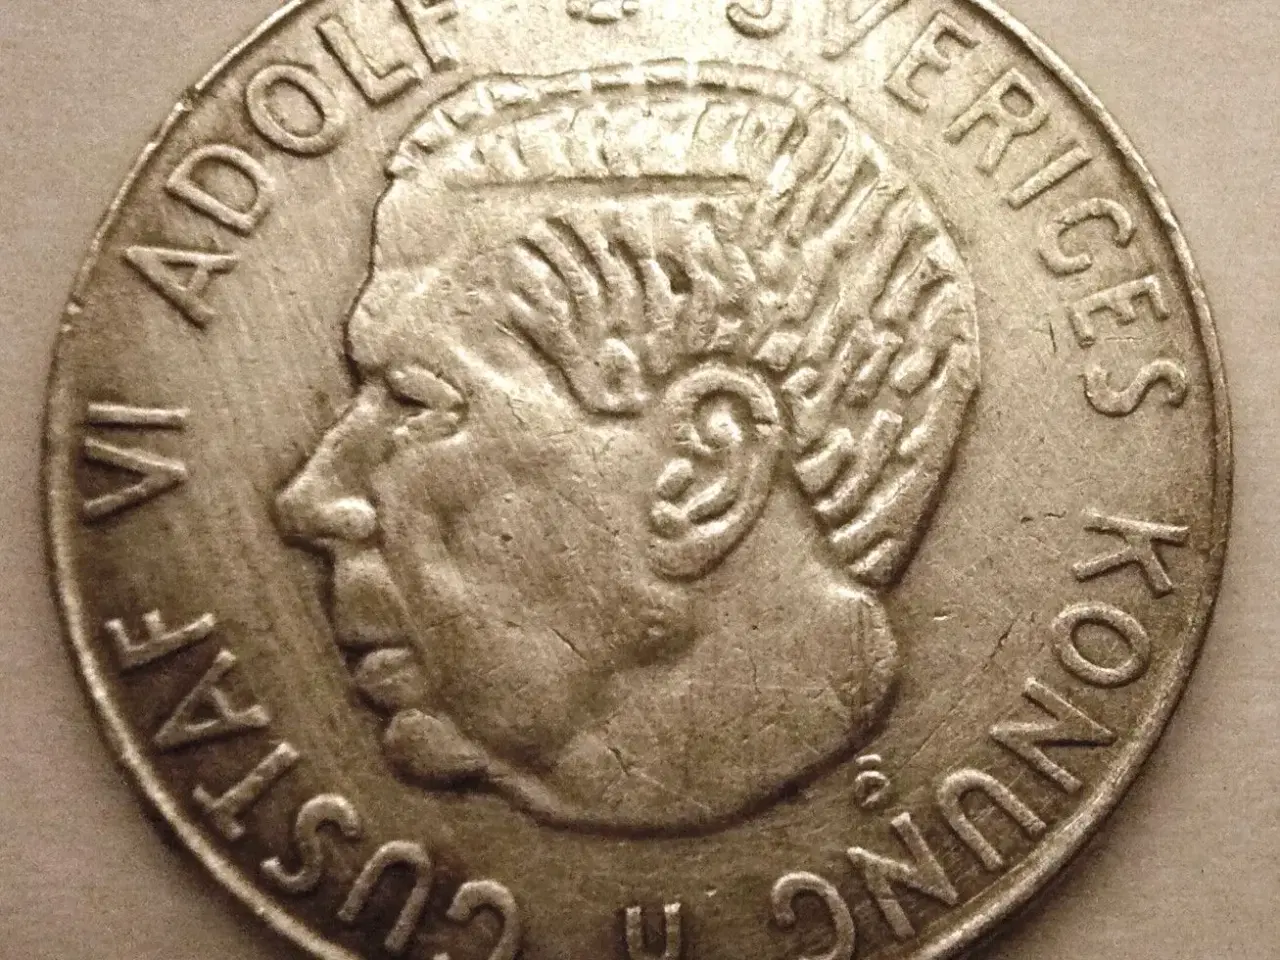 Billede 1 - Svenske 1 krona mønter fra 1952-1973